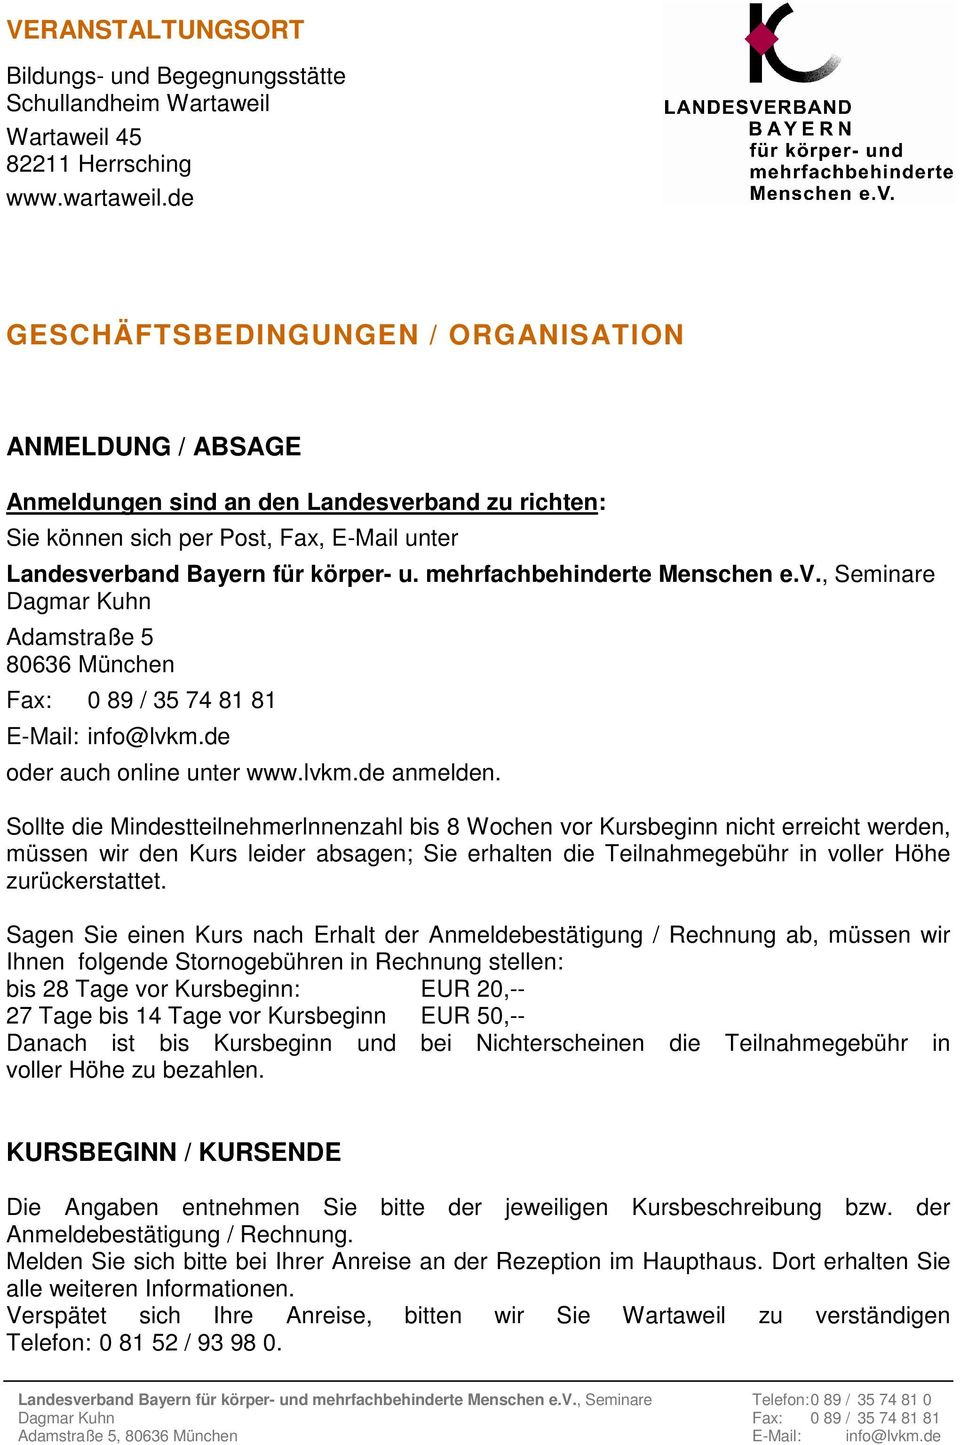 mehrfachbehinderte Menschen e.v., Seminare Dagmar Kuhn Adamstraße 5 80636 München Fax: 0 89 / 35 74 81 81 E-Mail: info@lvkm.de oder auch online unter www.lvkm.de anmelden.